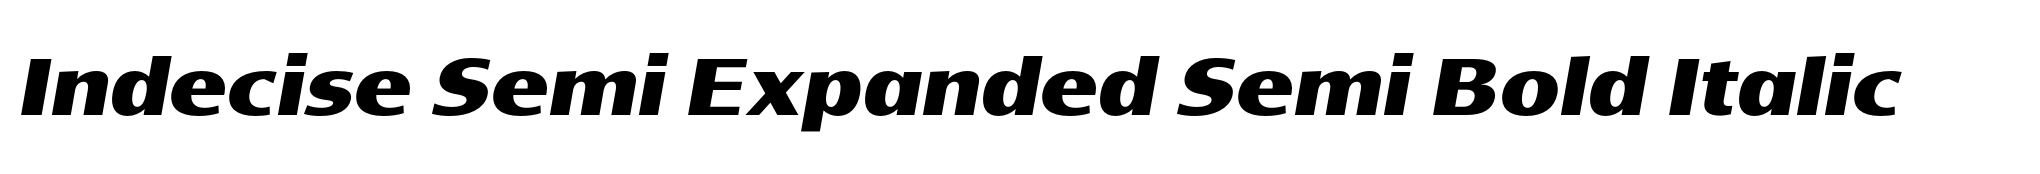 Indecise Semi Expanded Semi Bold Italic image